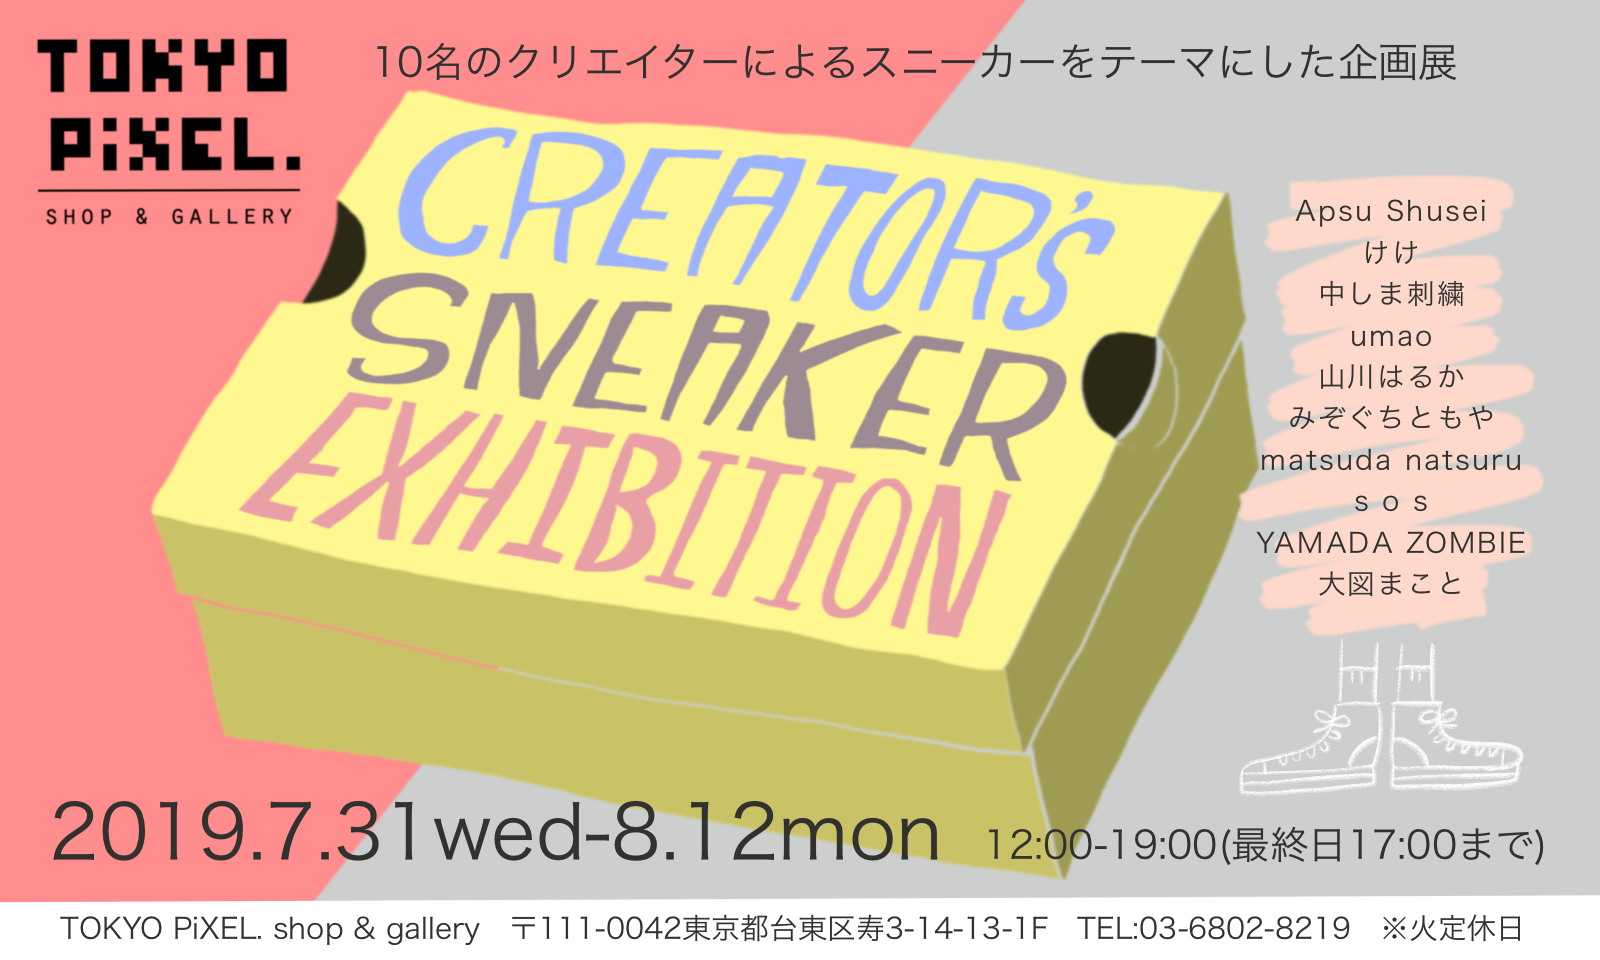 2019.7.31～8.12 『Creators Sneaker Exhibition』 | TOKYO PiXEL 